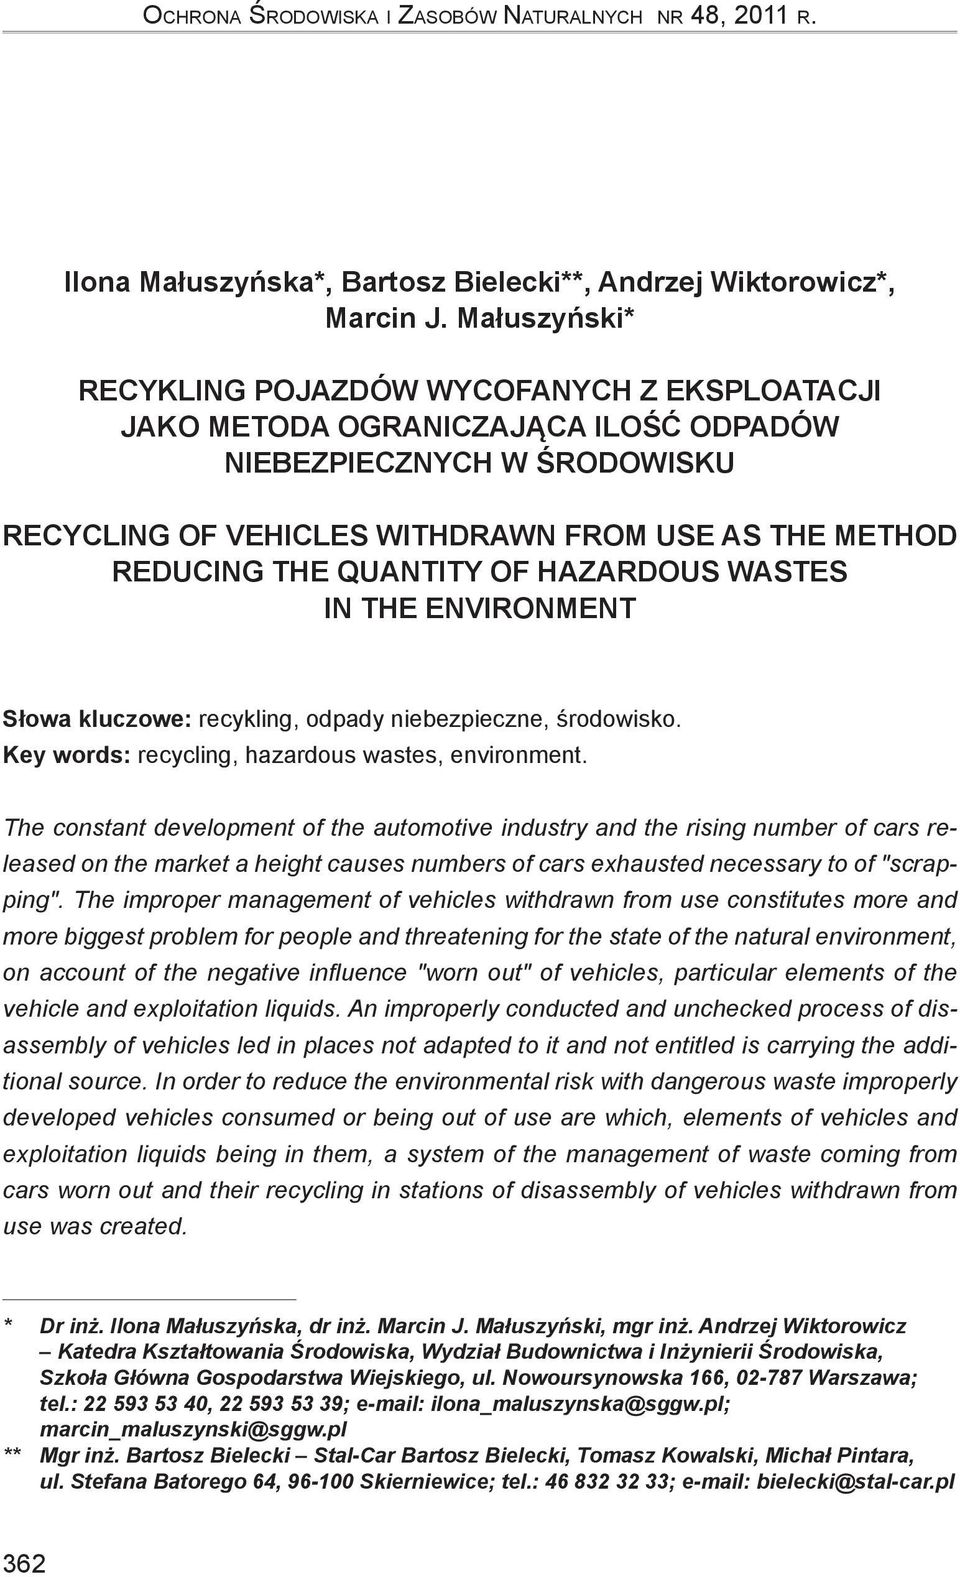 quantity of hazardous wastes in the environment Słowa kluczowe: recykling, odpady niebezpieczne, środowisko. Key words: recycling, hazardous wastes, environment.